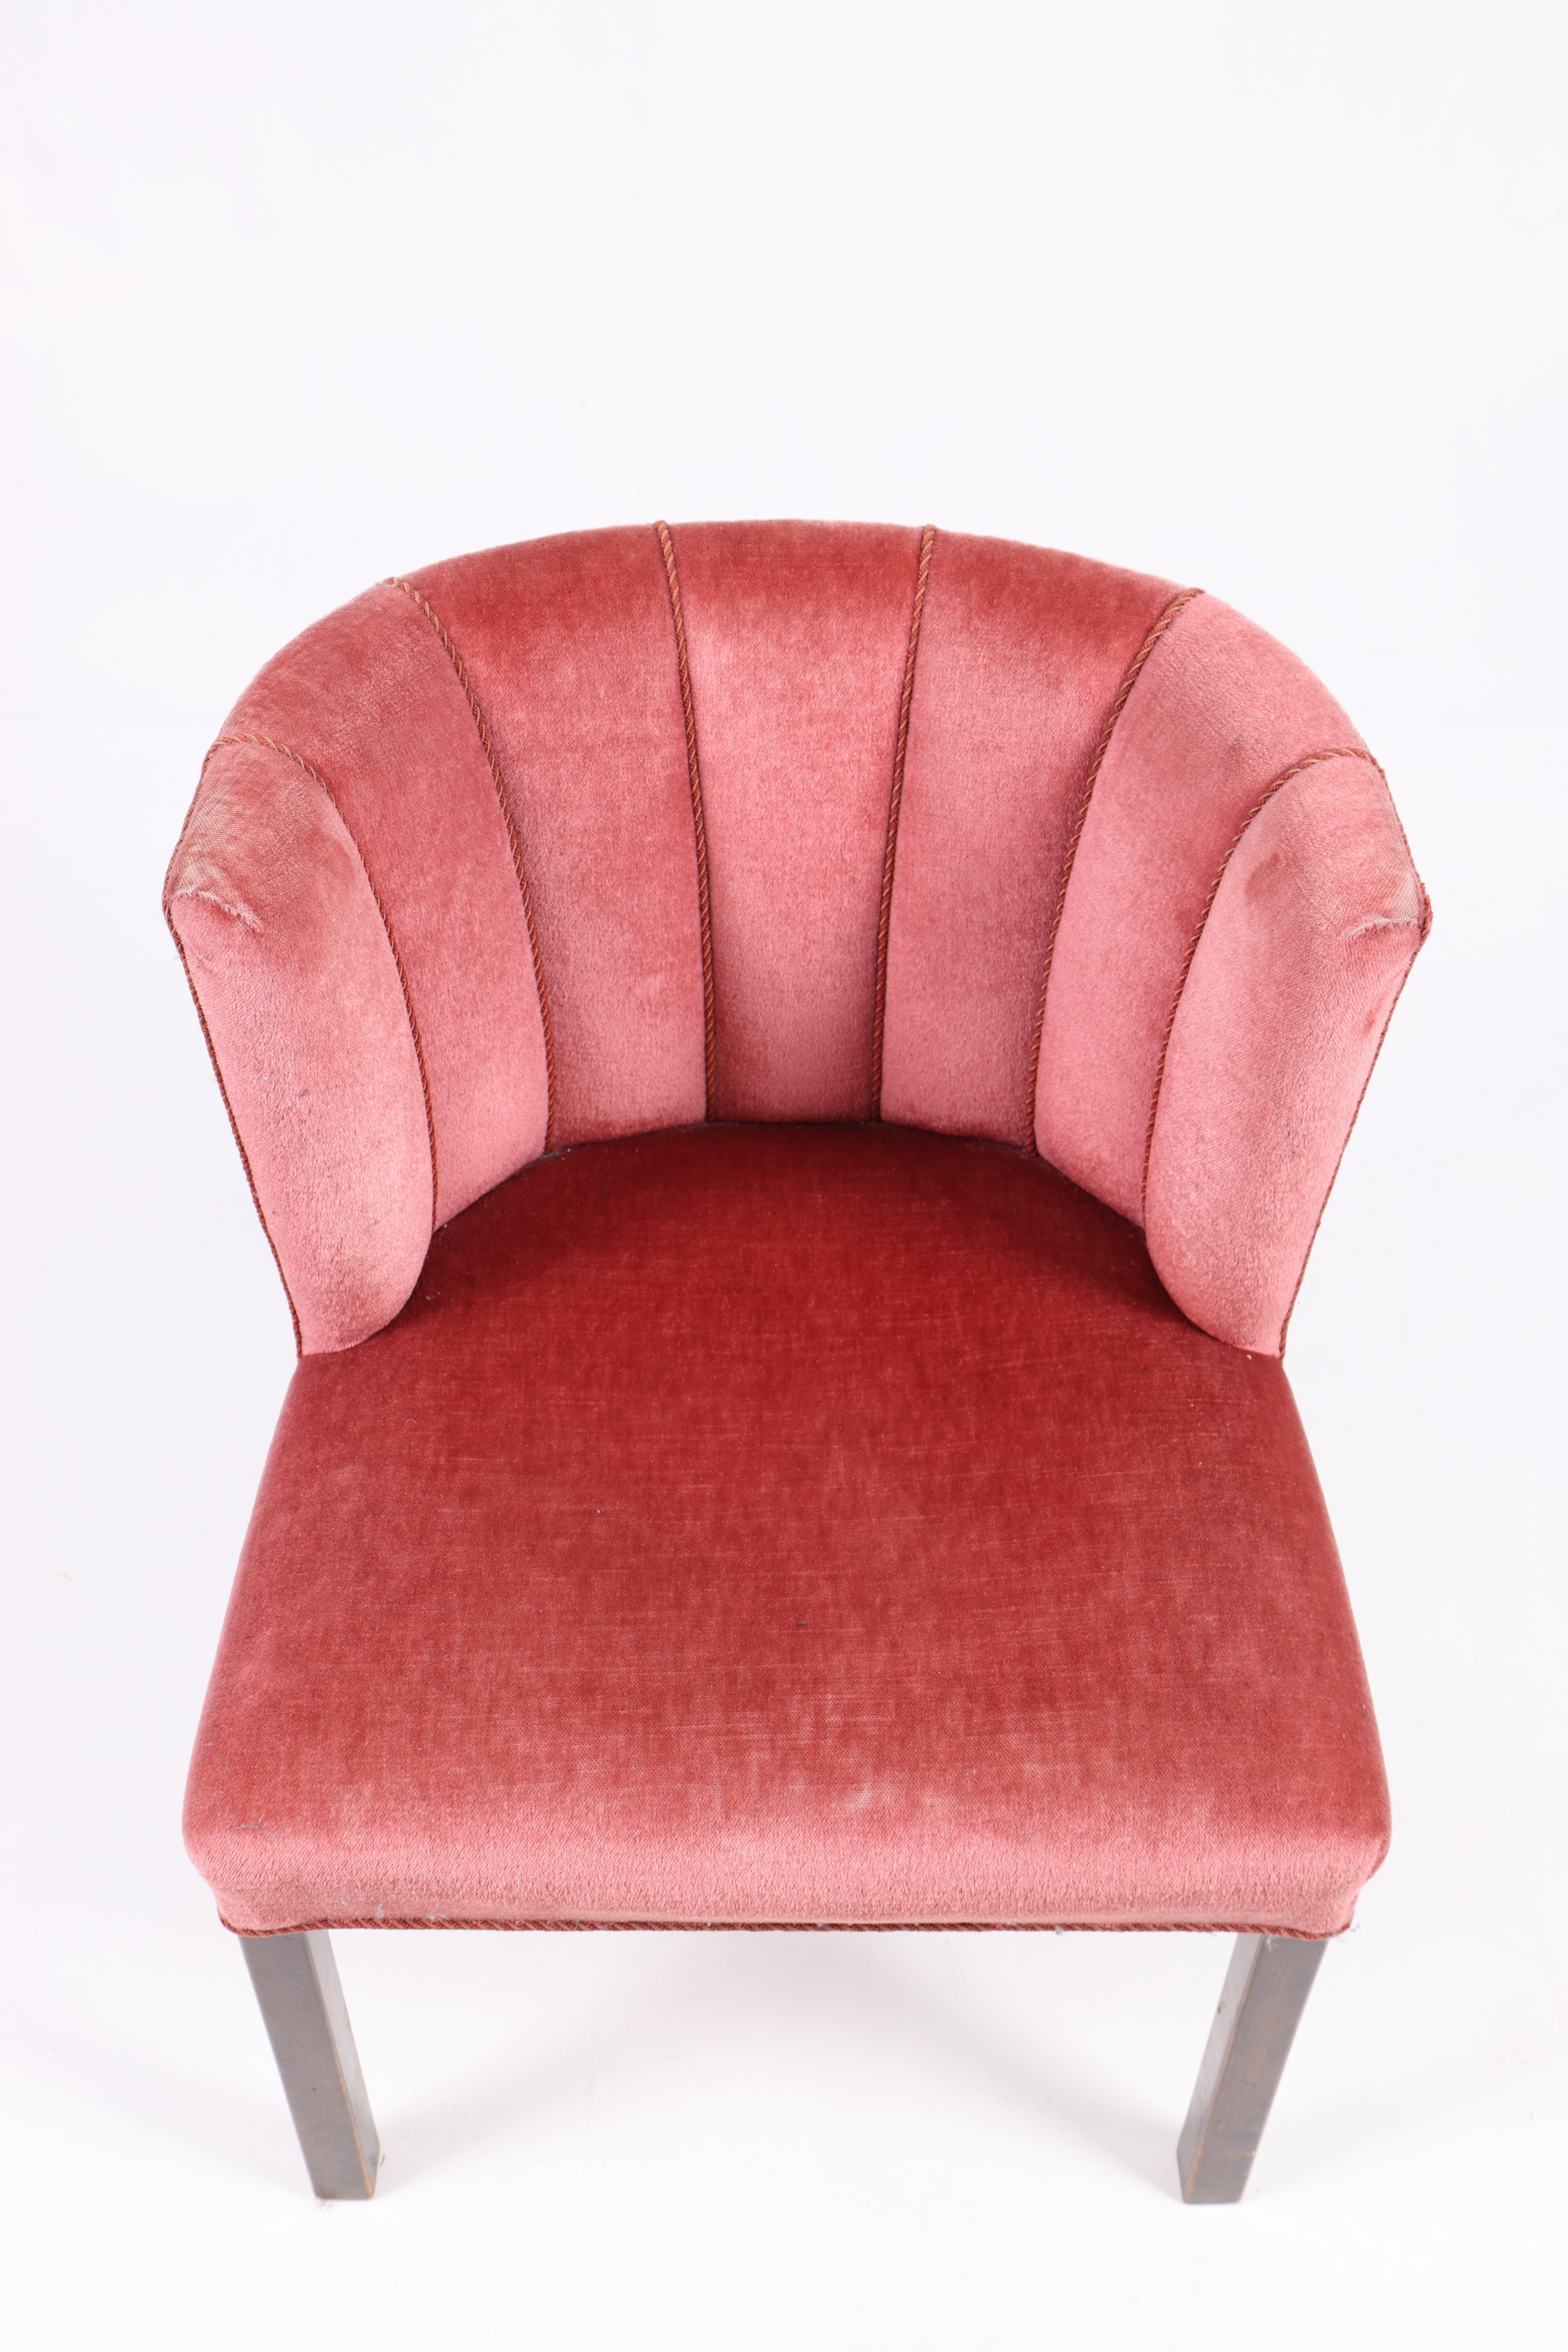 Sessel aus Stoff, entworfen und hergestellt von Fritz Hansen in den 1940er Jahren. Ursprünglicher Zustand.